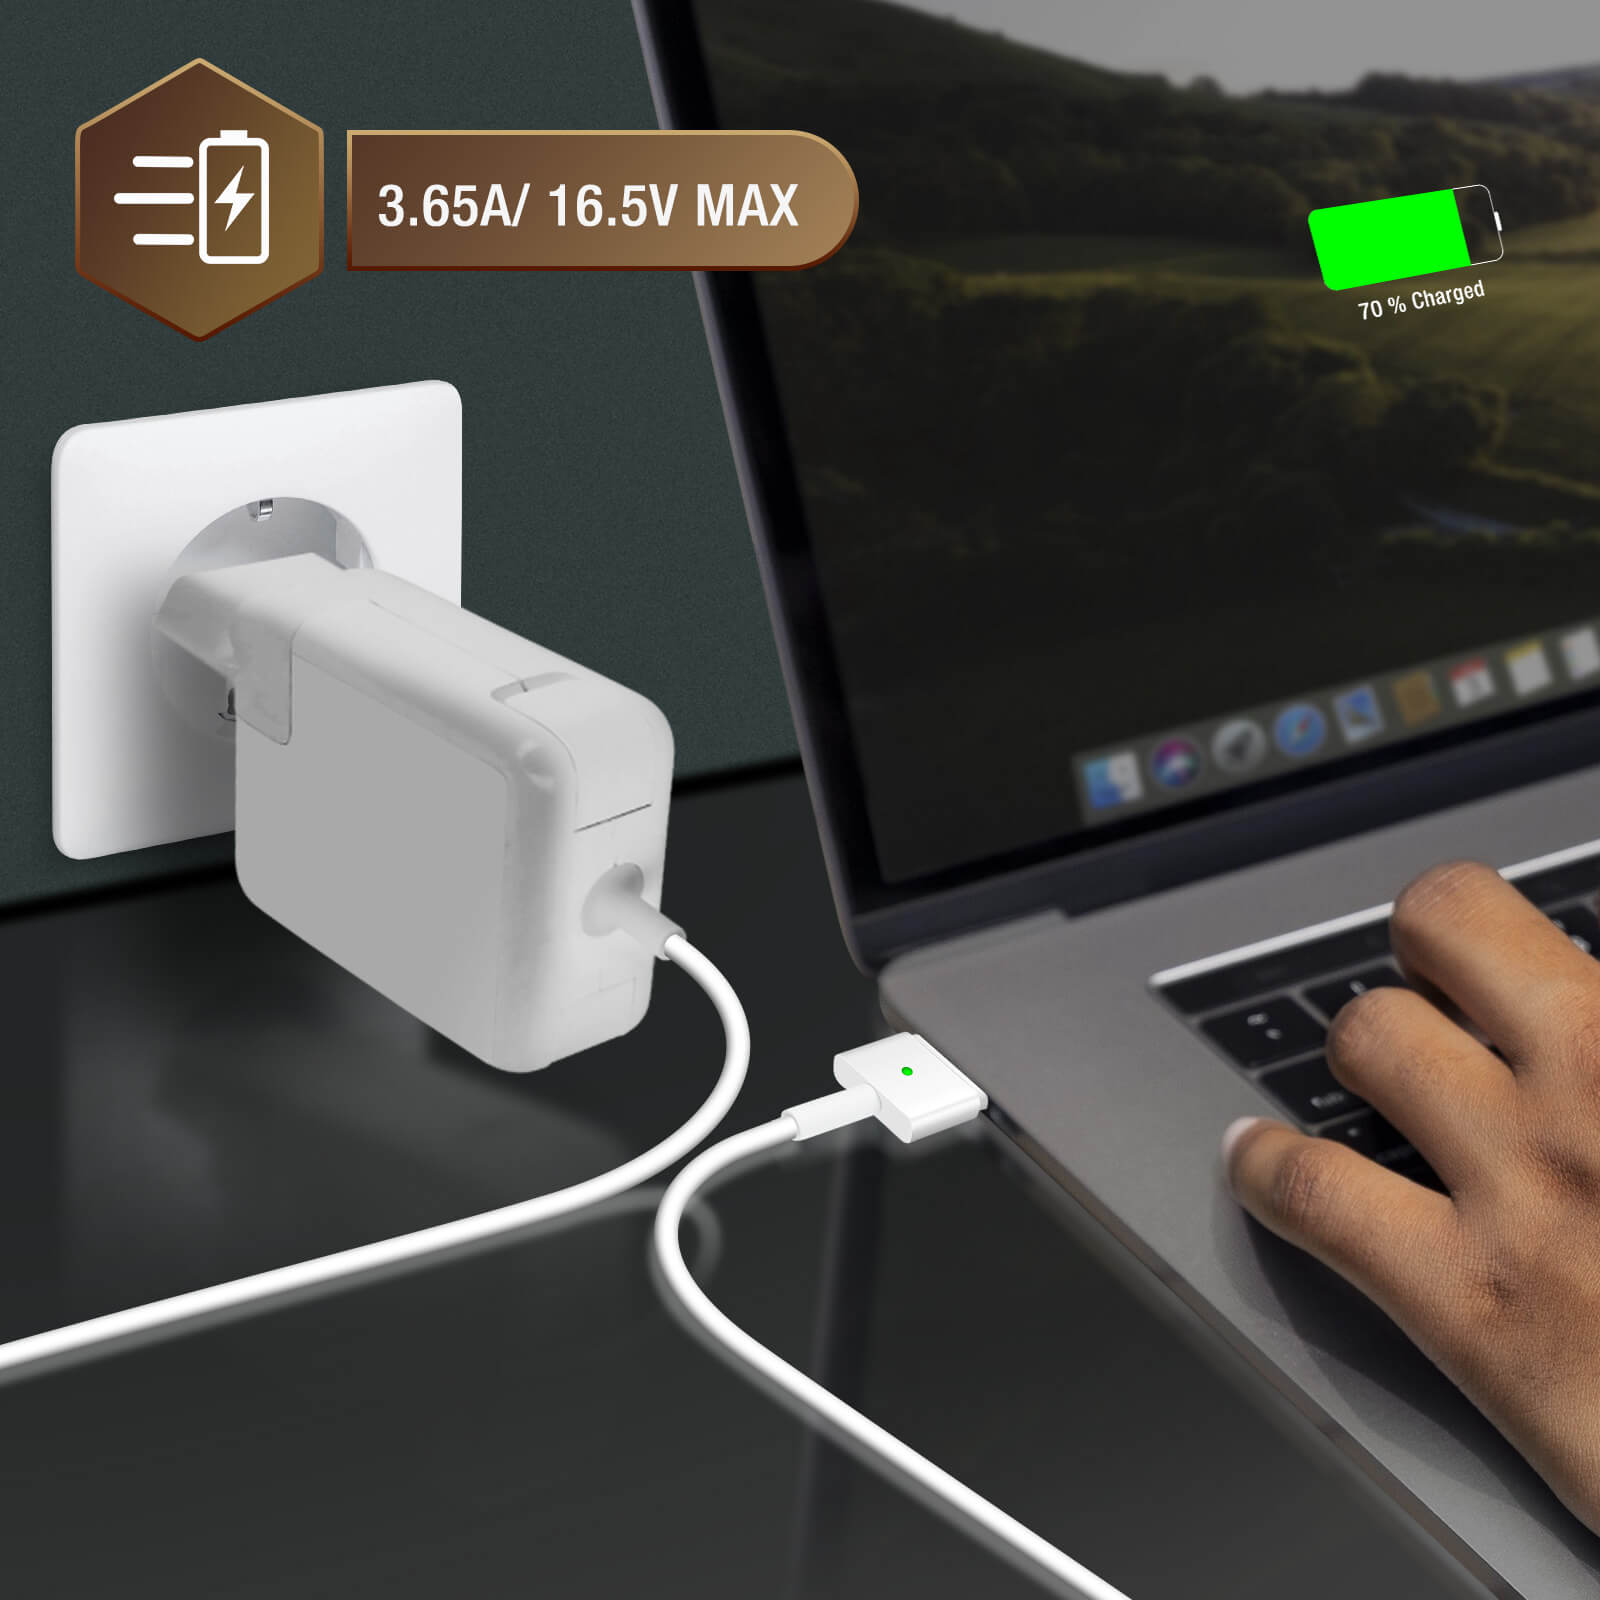 Chargeur Secteur Macbook Pro 13 MagSafe 2 60W / 16.5V 3.65A LinQ